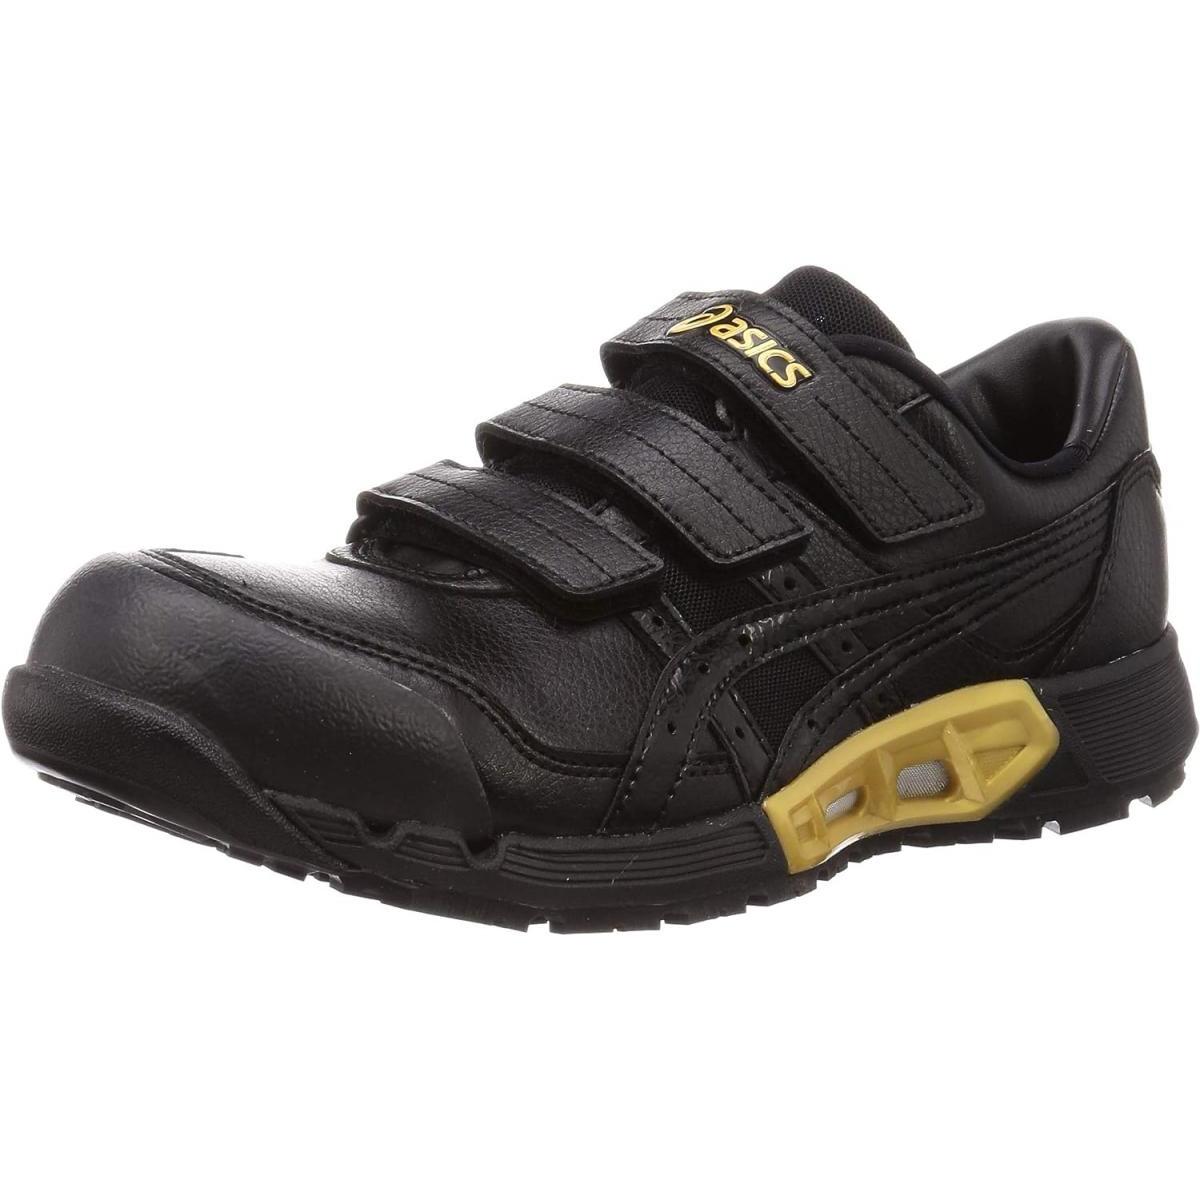 アシックスアシックス asics 安全靴/作業靴 26.0cm ウィンジョブ WINJOB CP305 AC メンズ ブラックブラック 黒